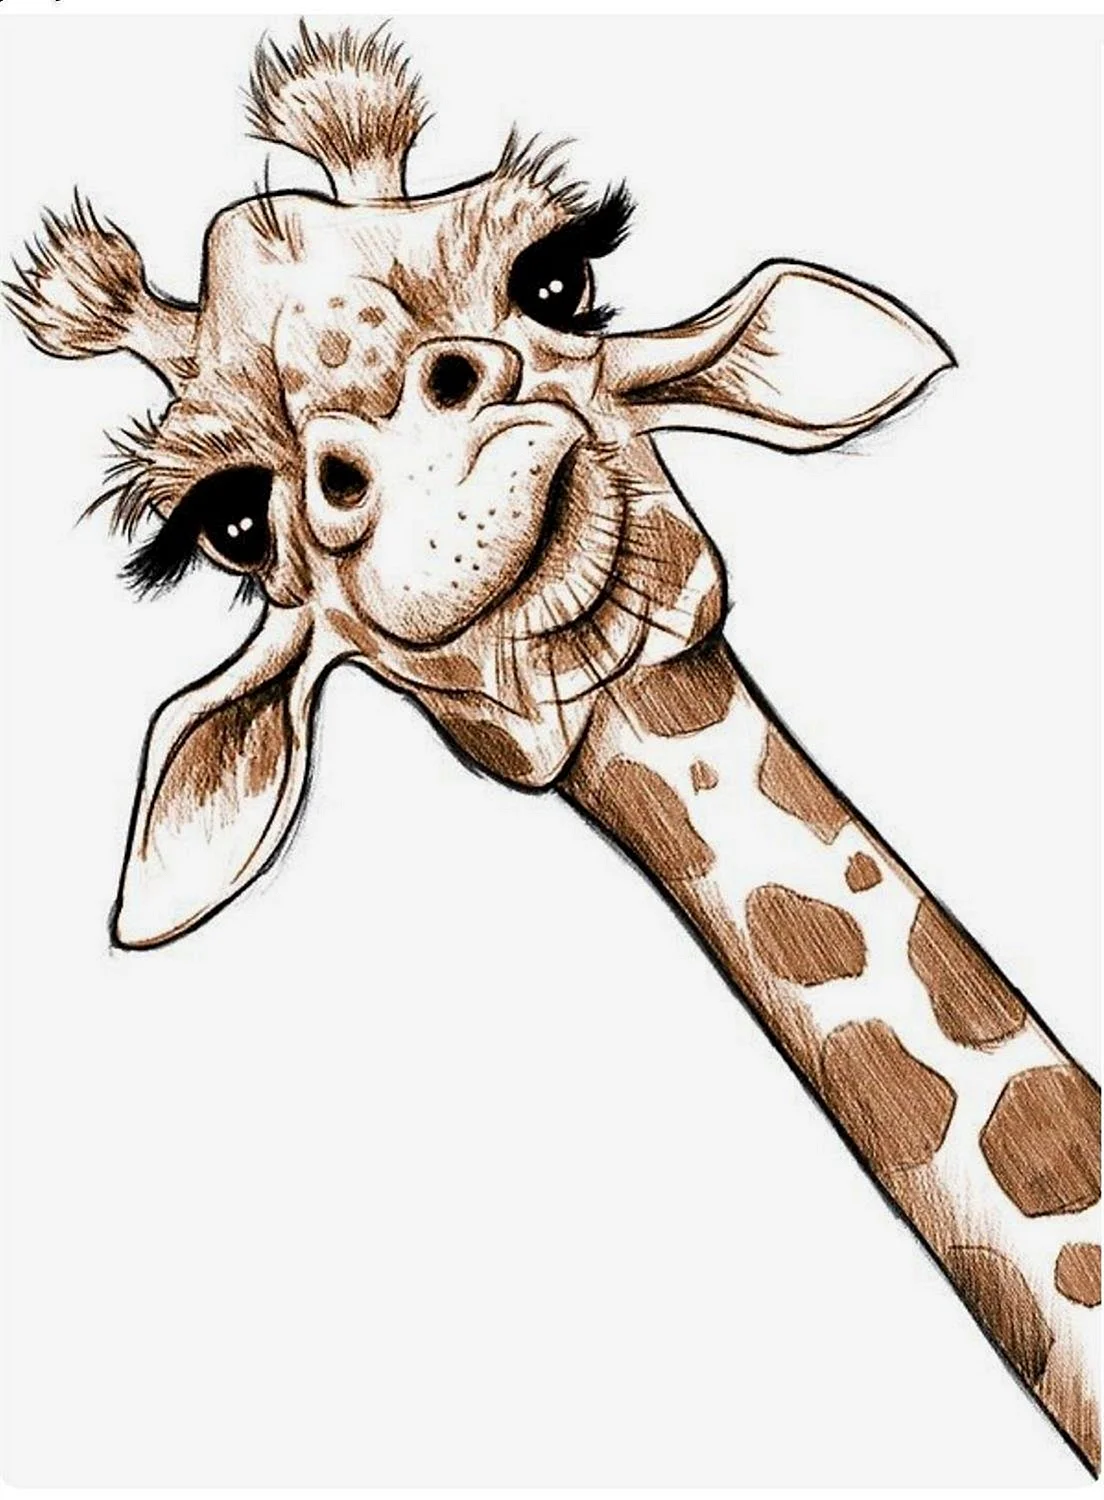 Наброски жирафа